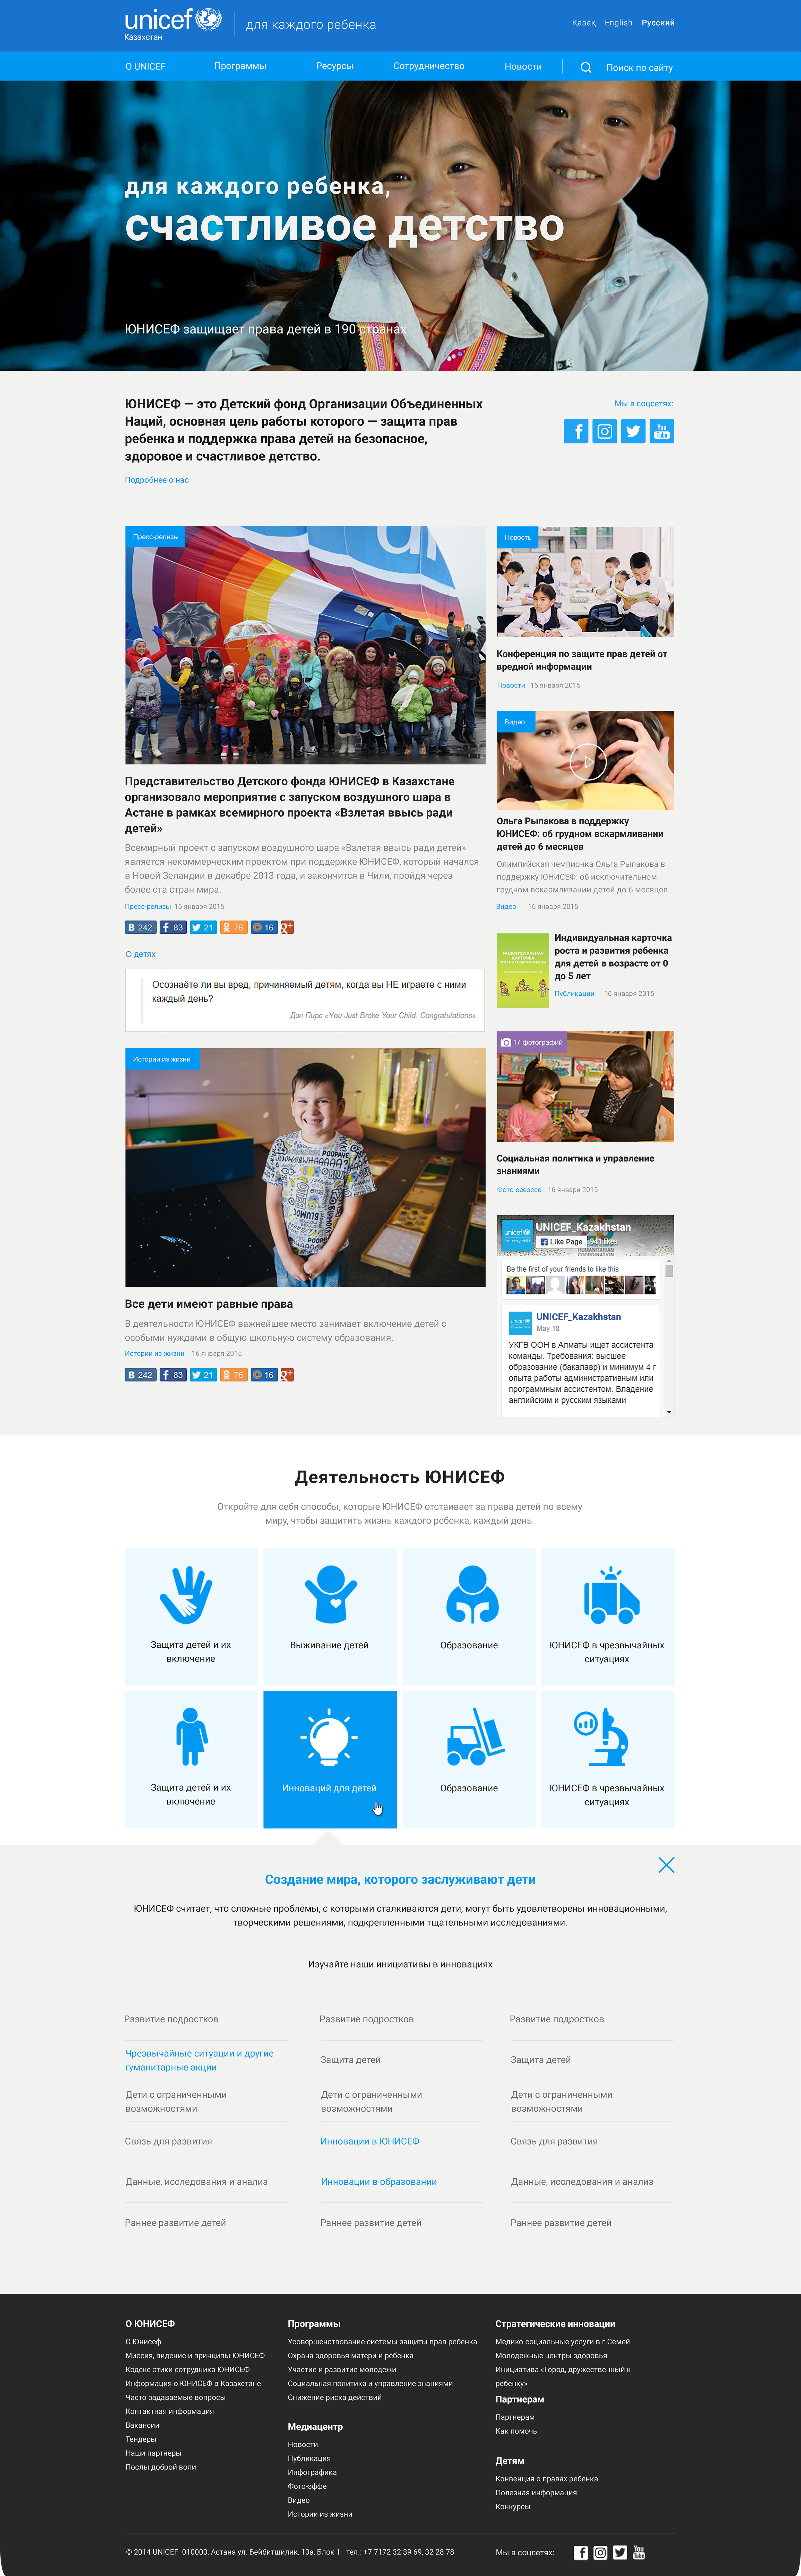 Корпоративный сайт для детского фонда ООН "UNICEF"